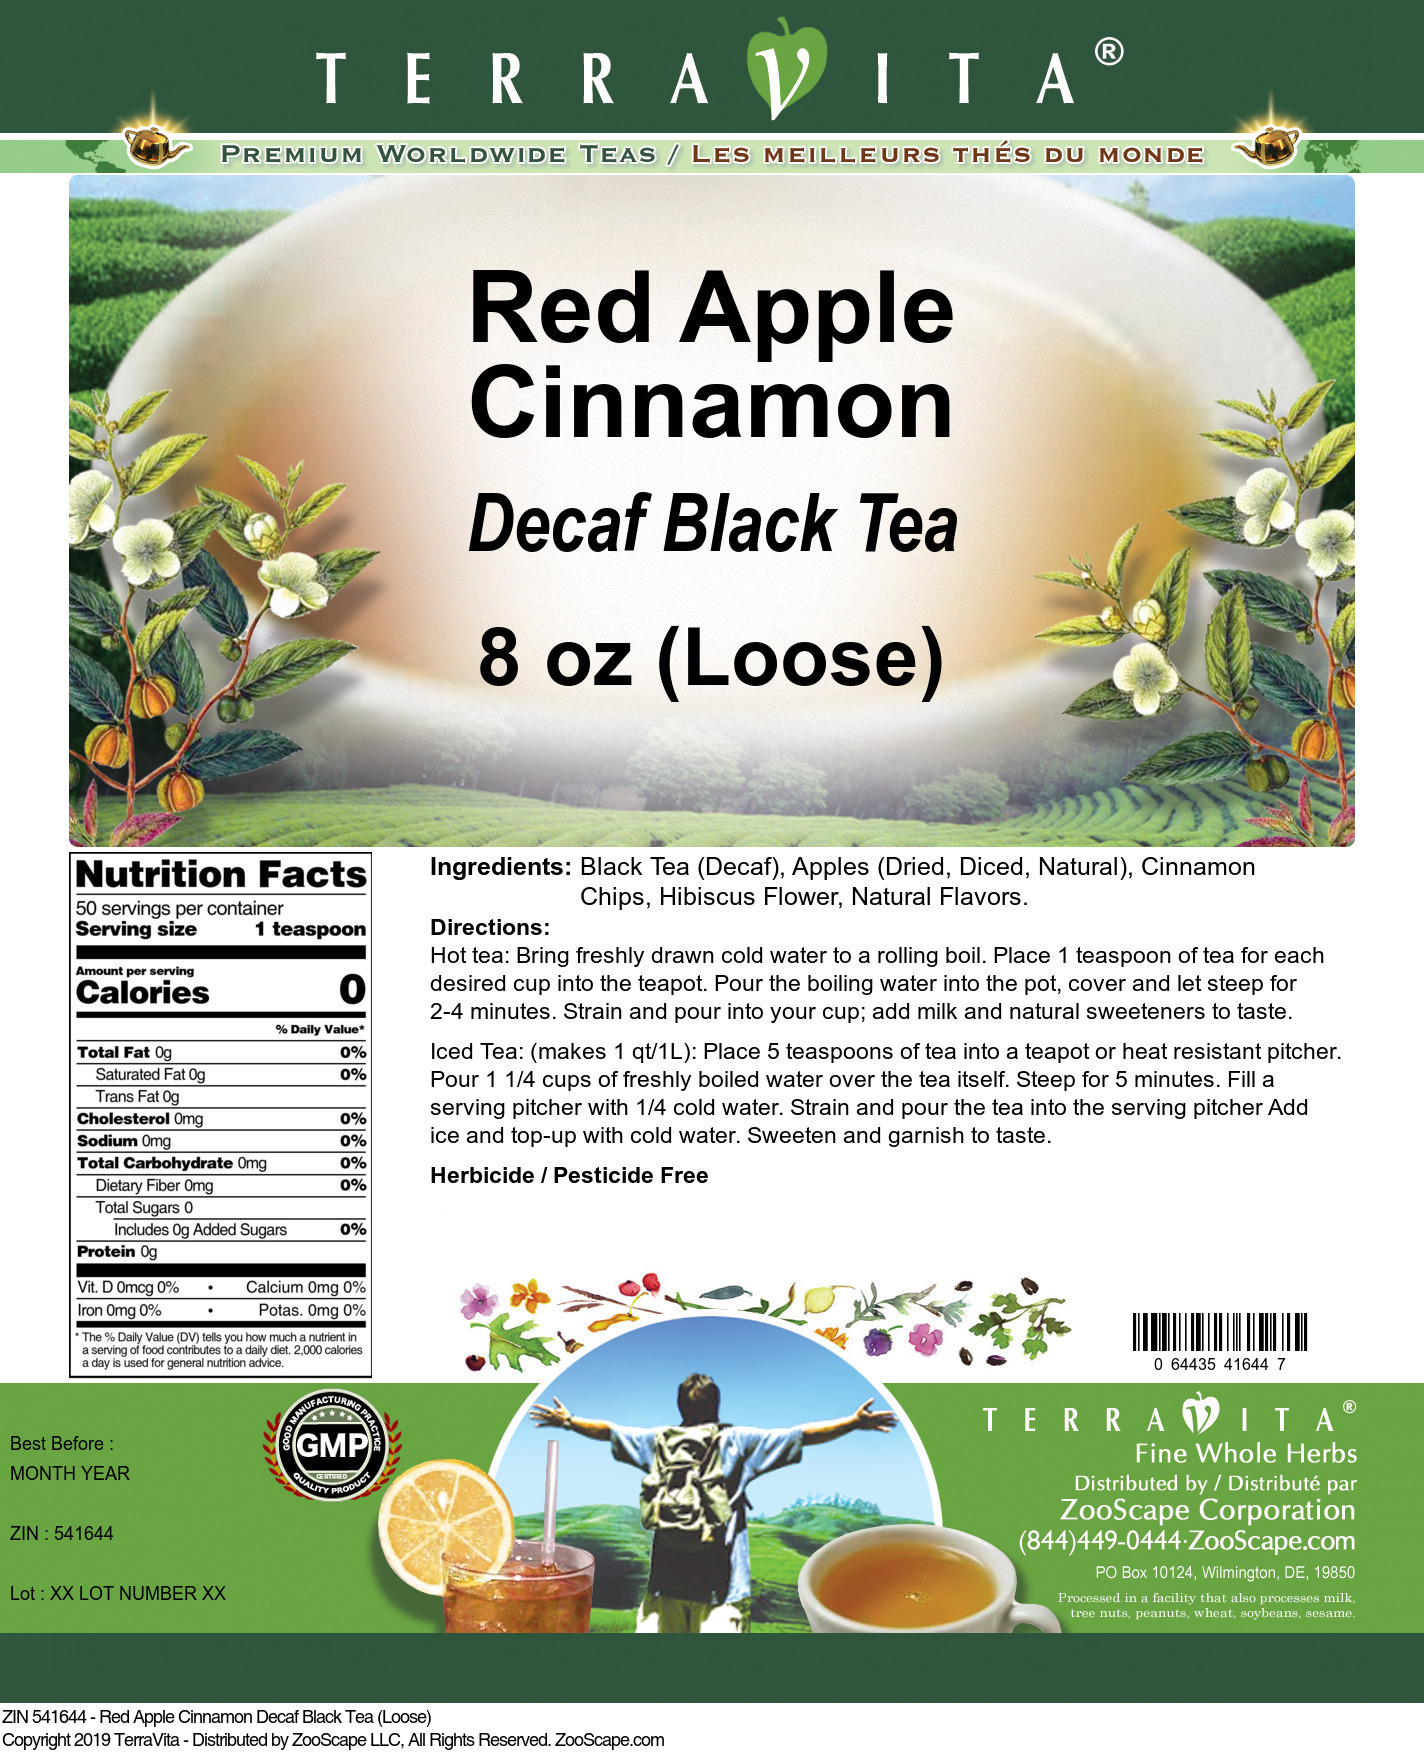 Red Apple Cinnamon Decaf Black Tea (Loose) - Label